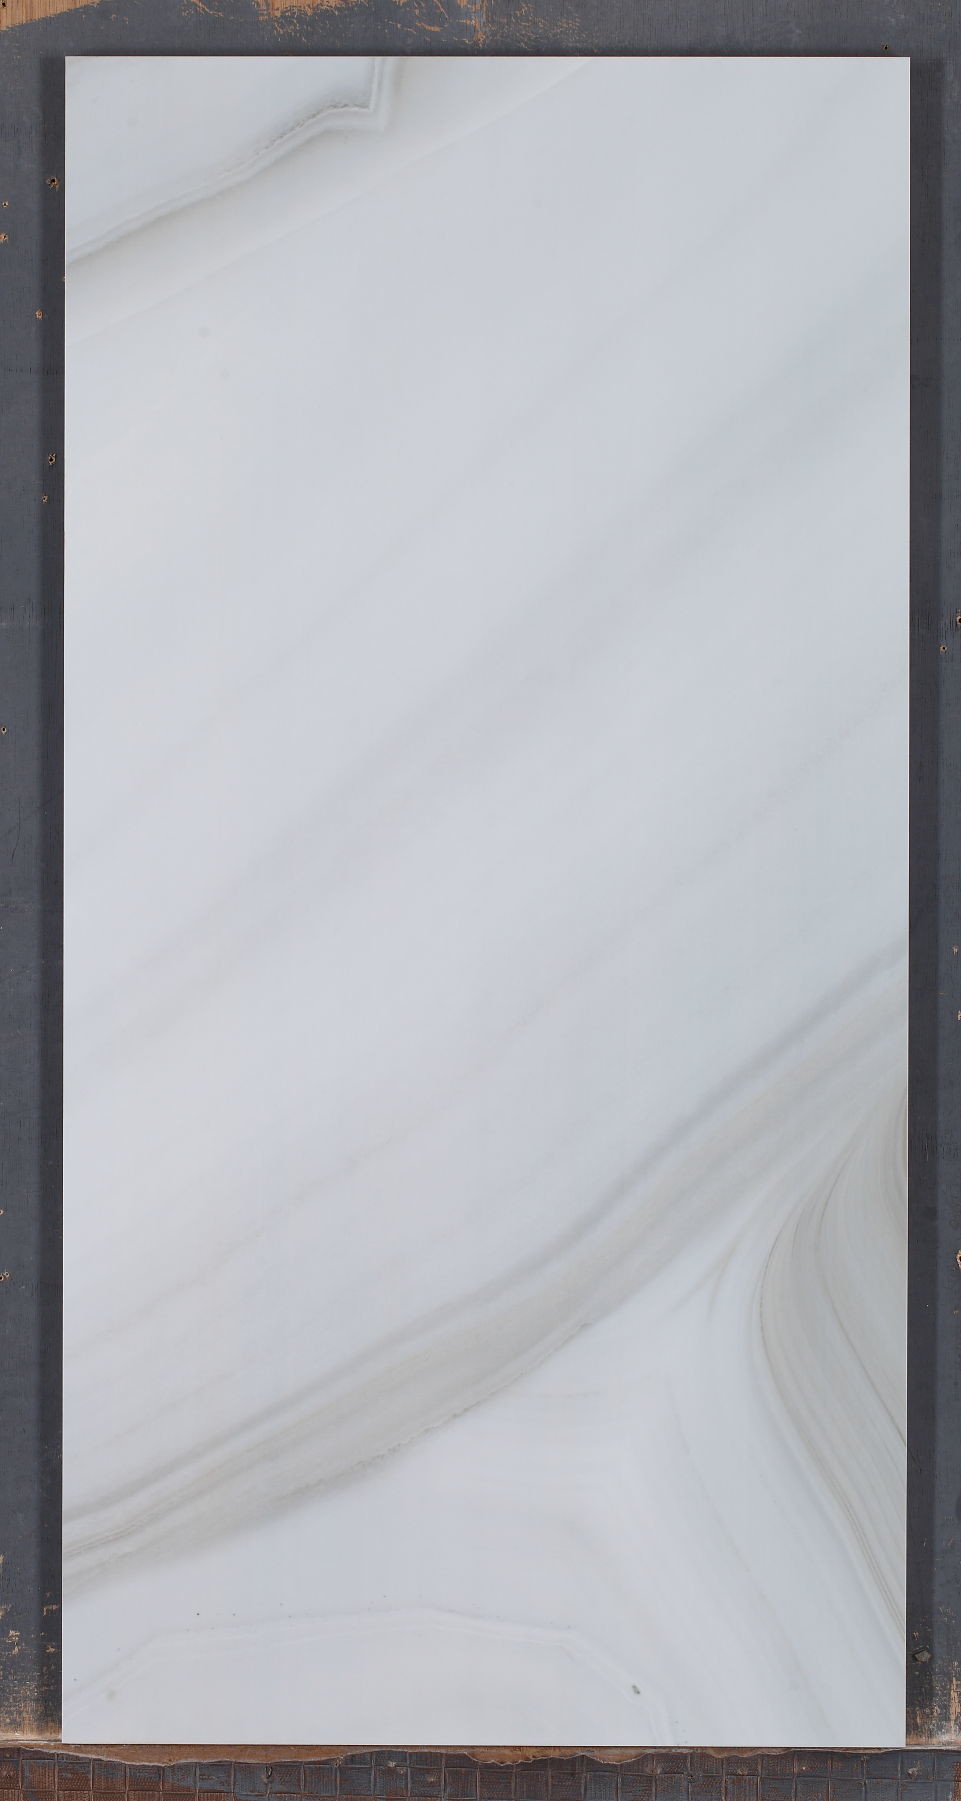 Βερνικωμένο ψηφιακό γυαλισμένο γκρίζο χρώμα αχατών κεραμιδιών τοίχων πορσελάνης ανθεκτικό στα οξέα